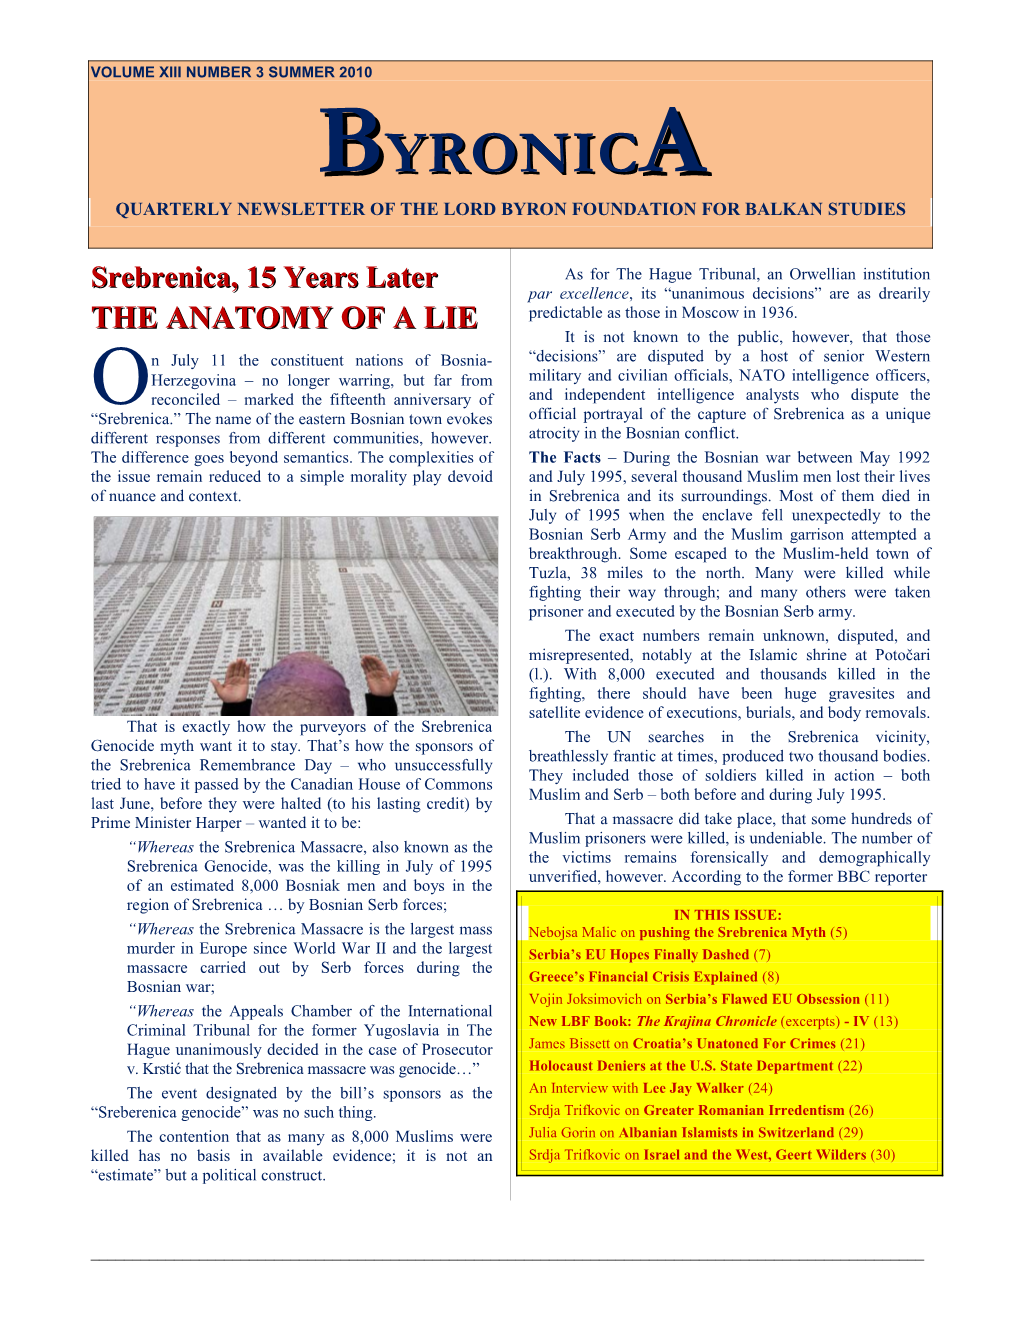 Byronica Vol XIII No 3 Summer 2010